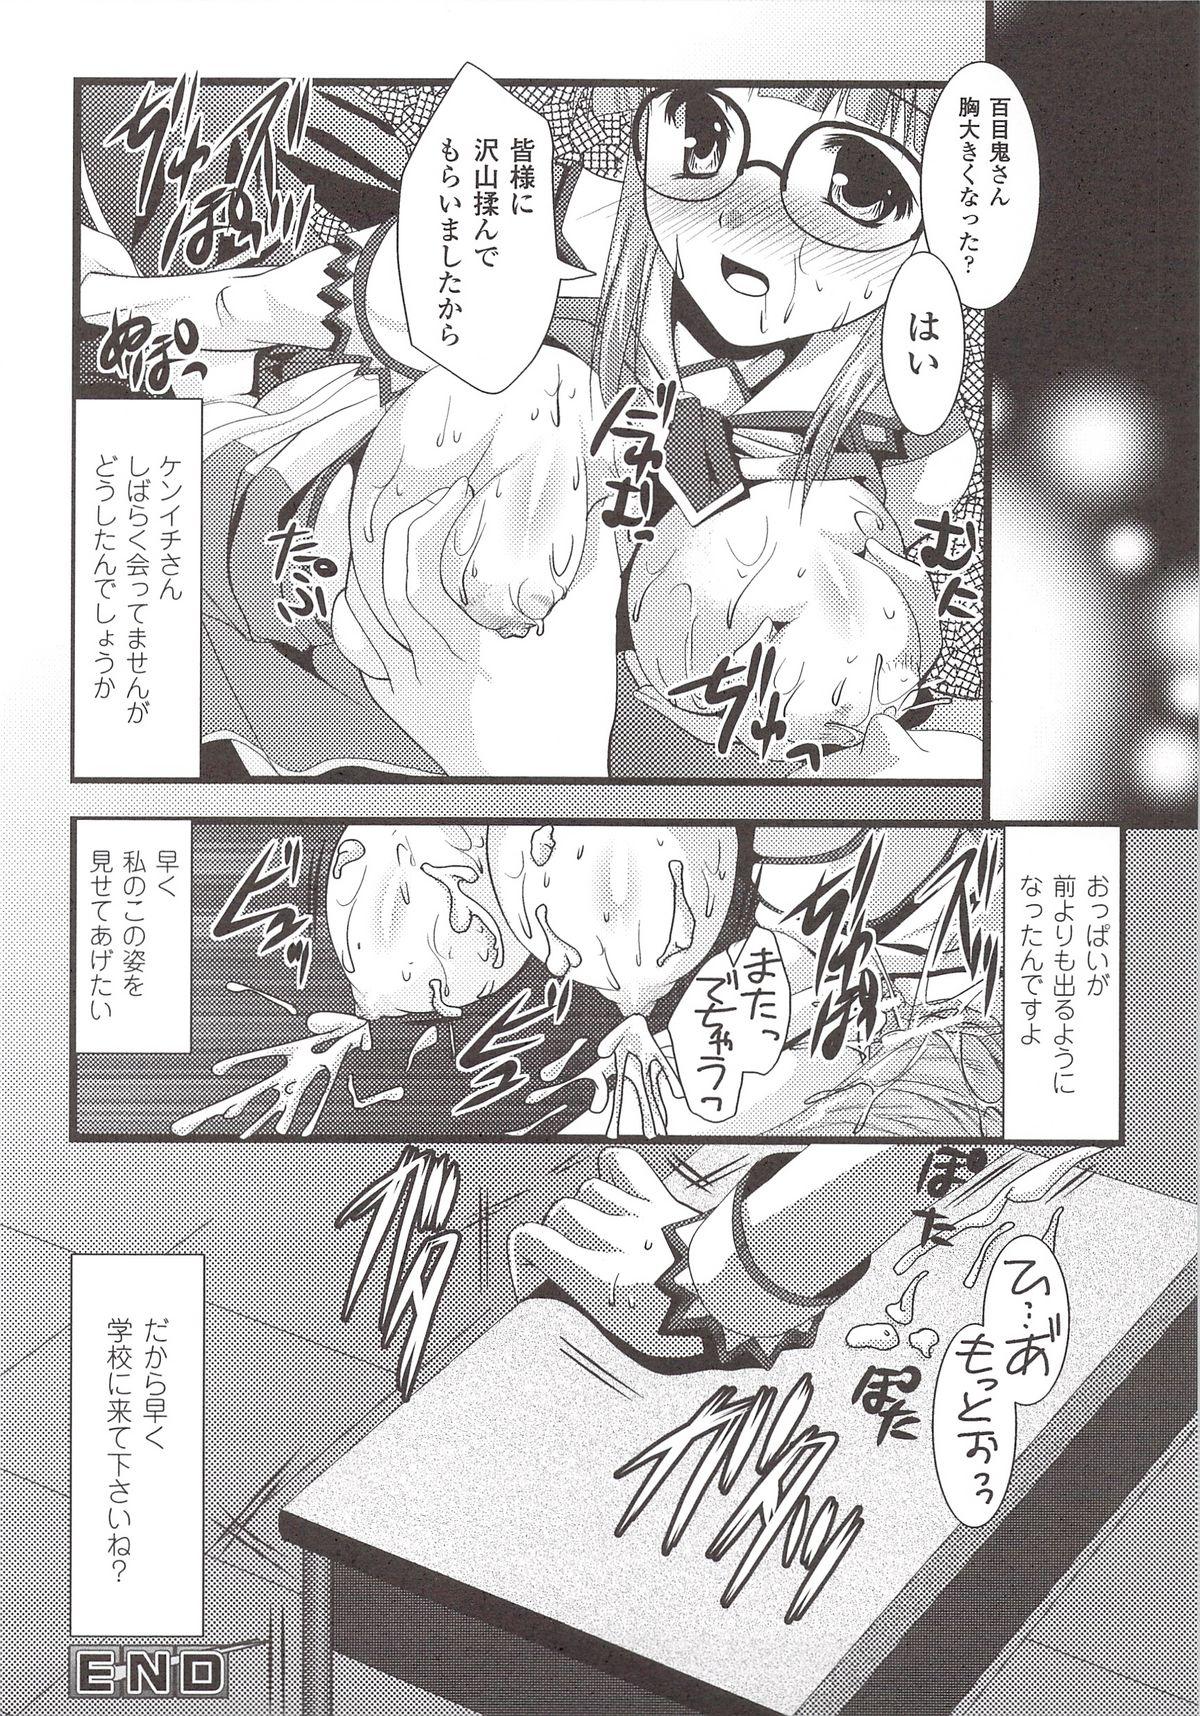 Suisei Tenshi Prima Veil Zwei Anthology Comic 157